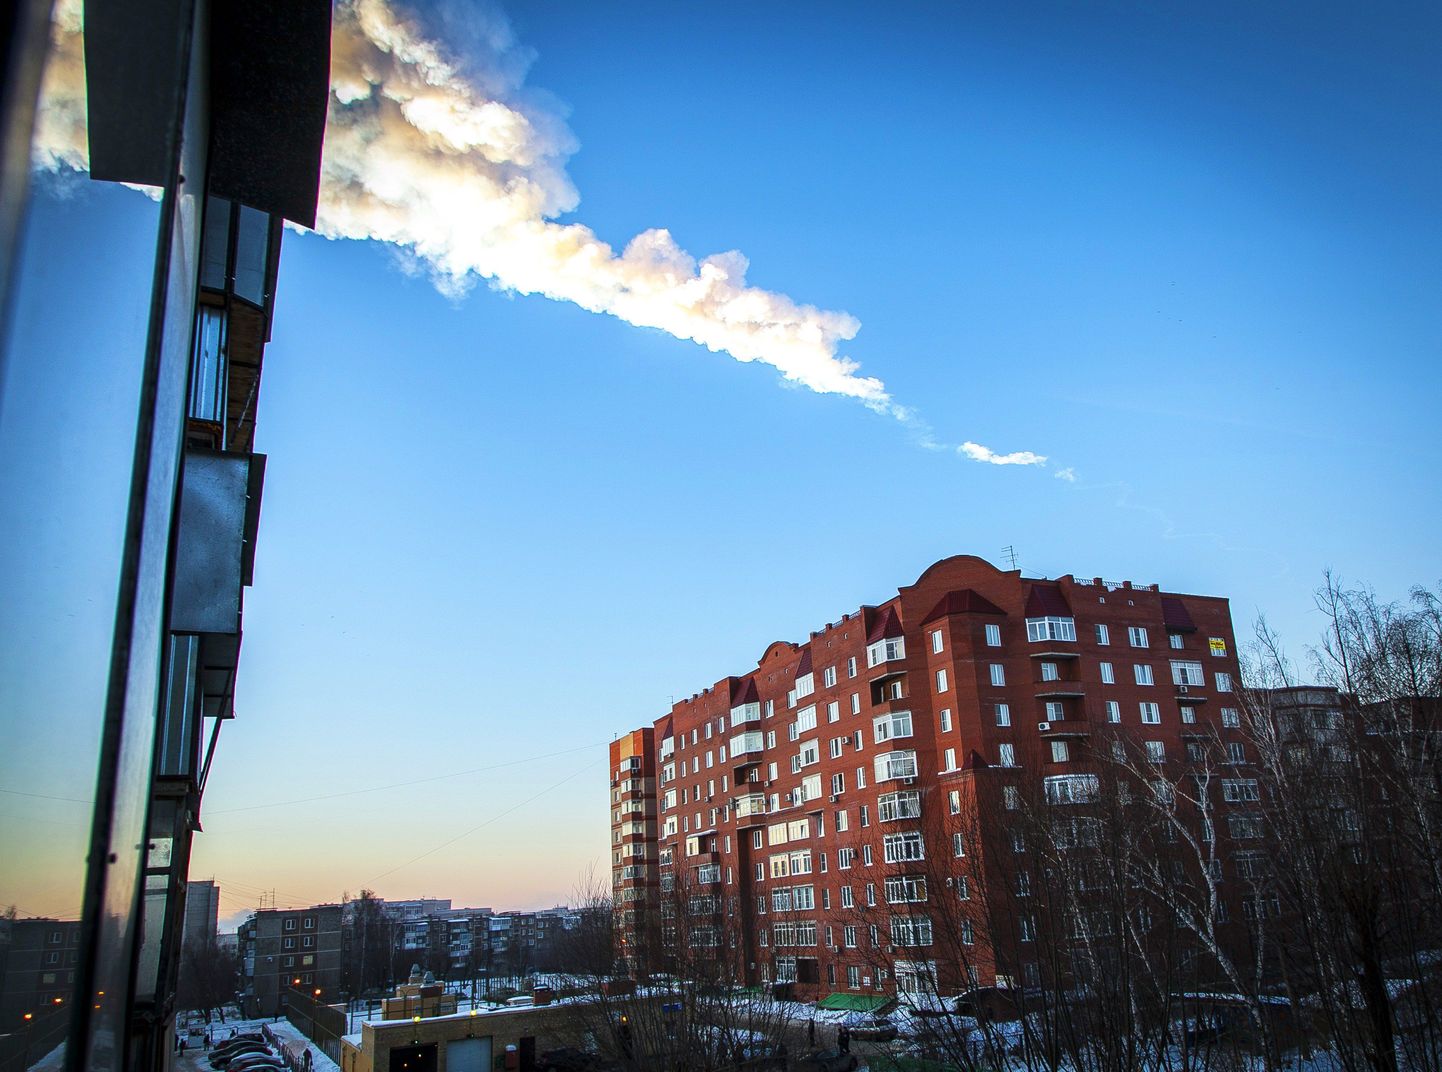 След от метеорита в небе над Челябинском